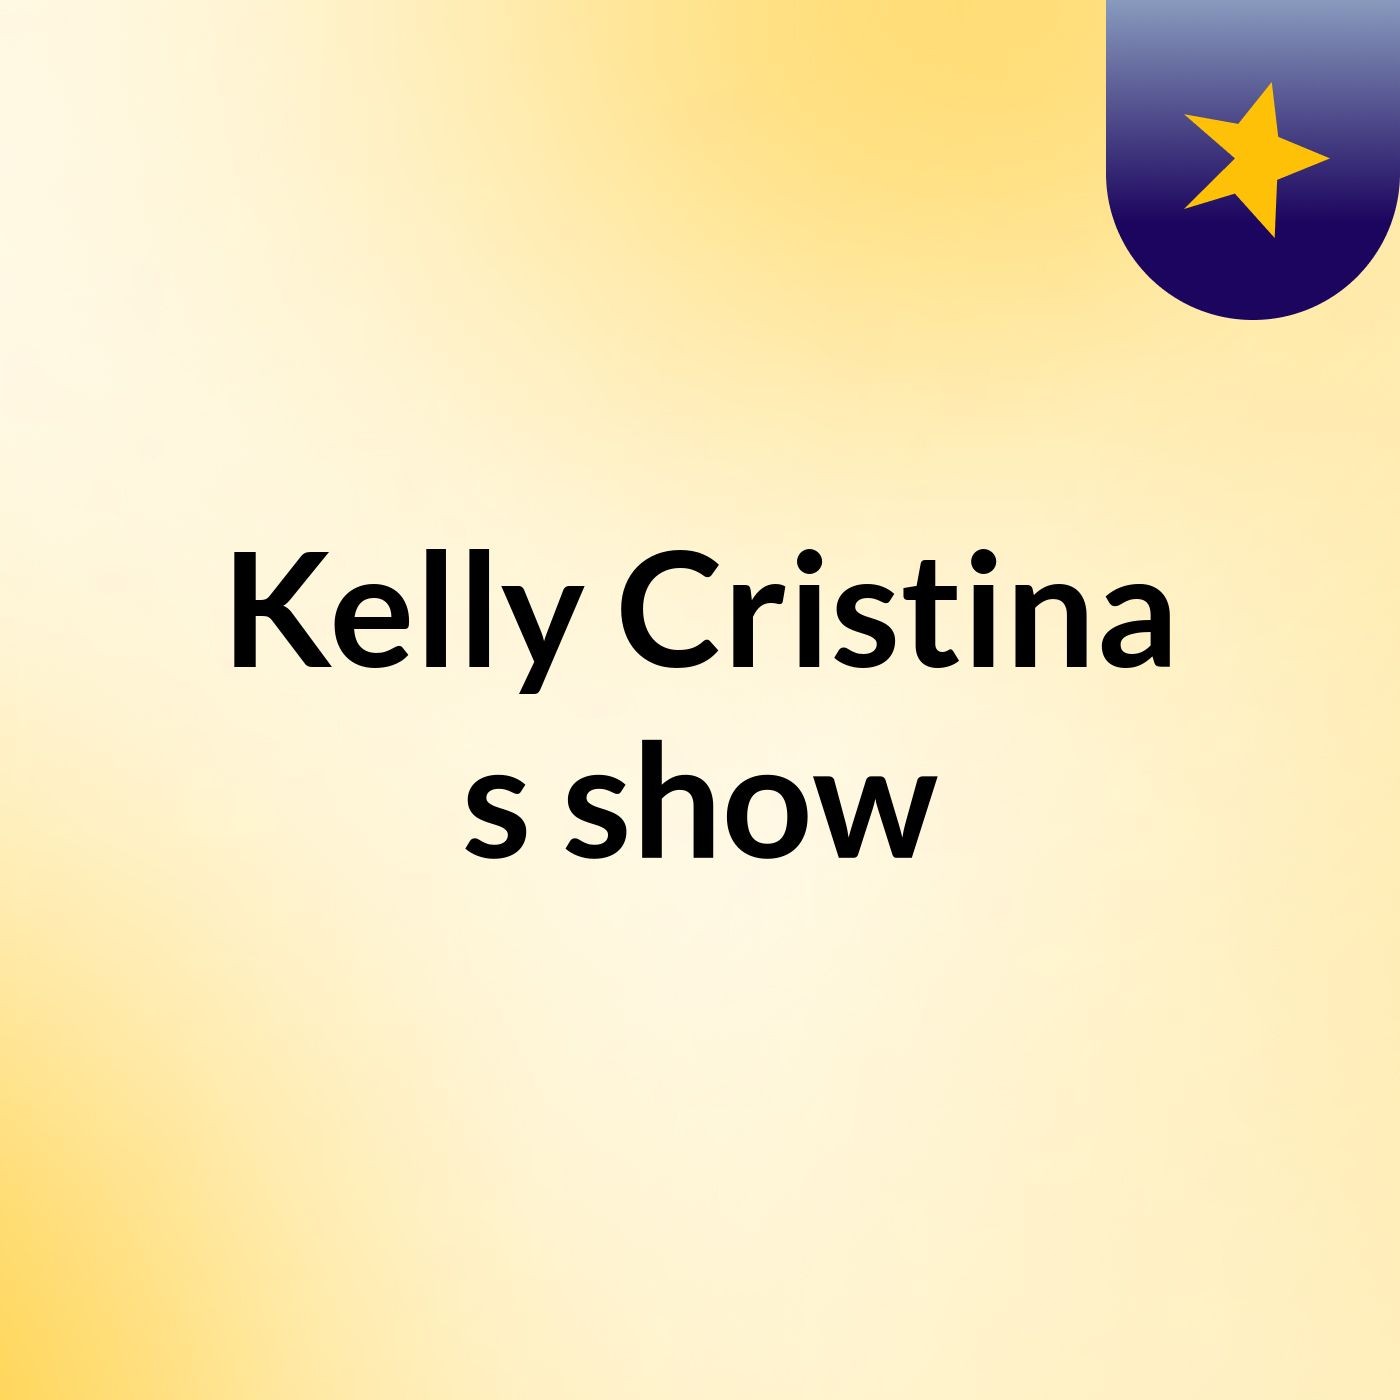 Kelly Cristina's show